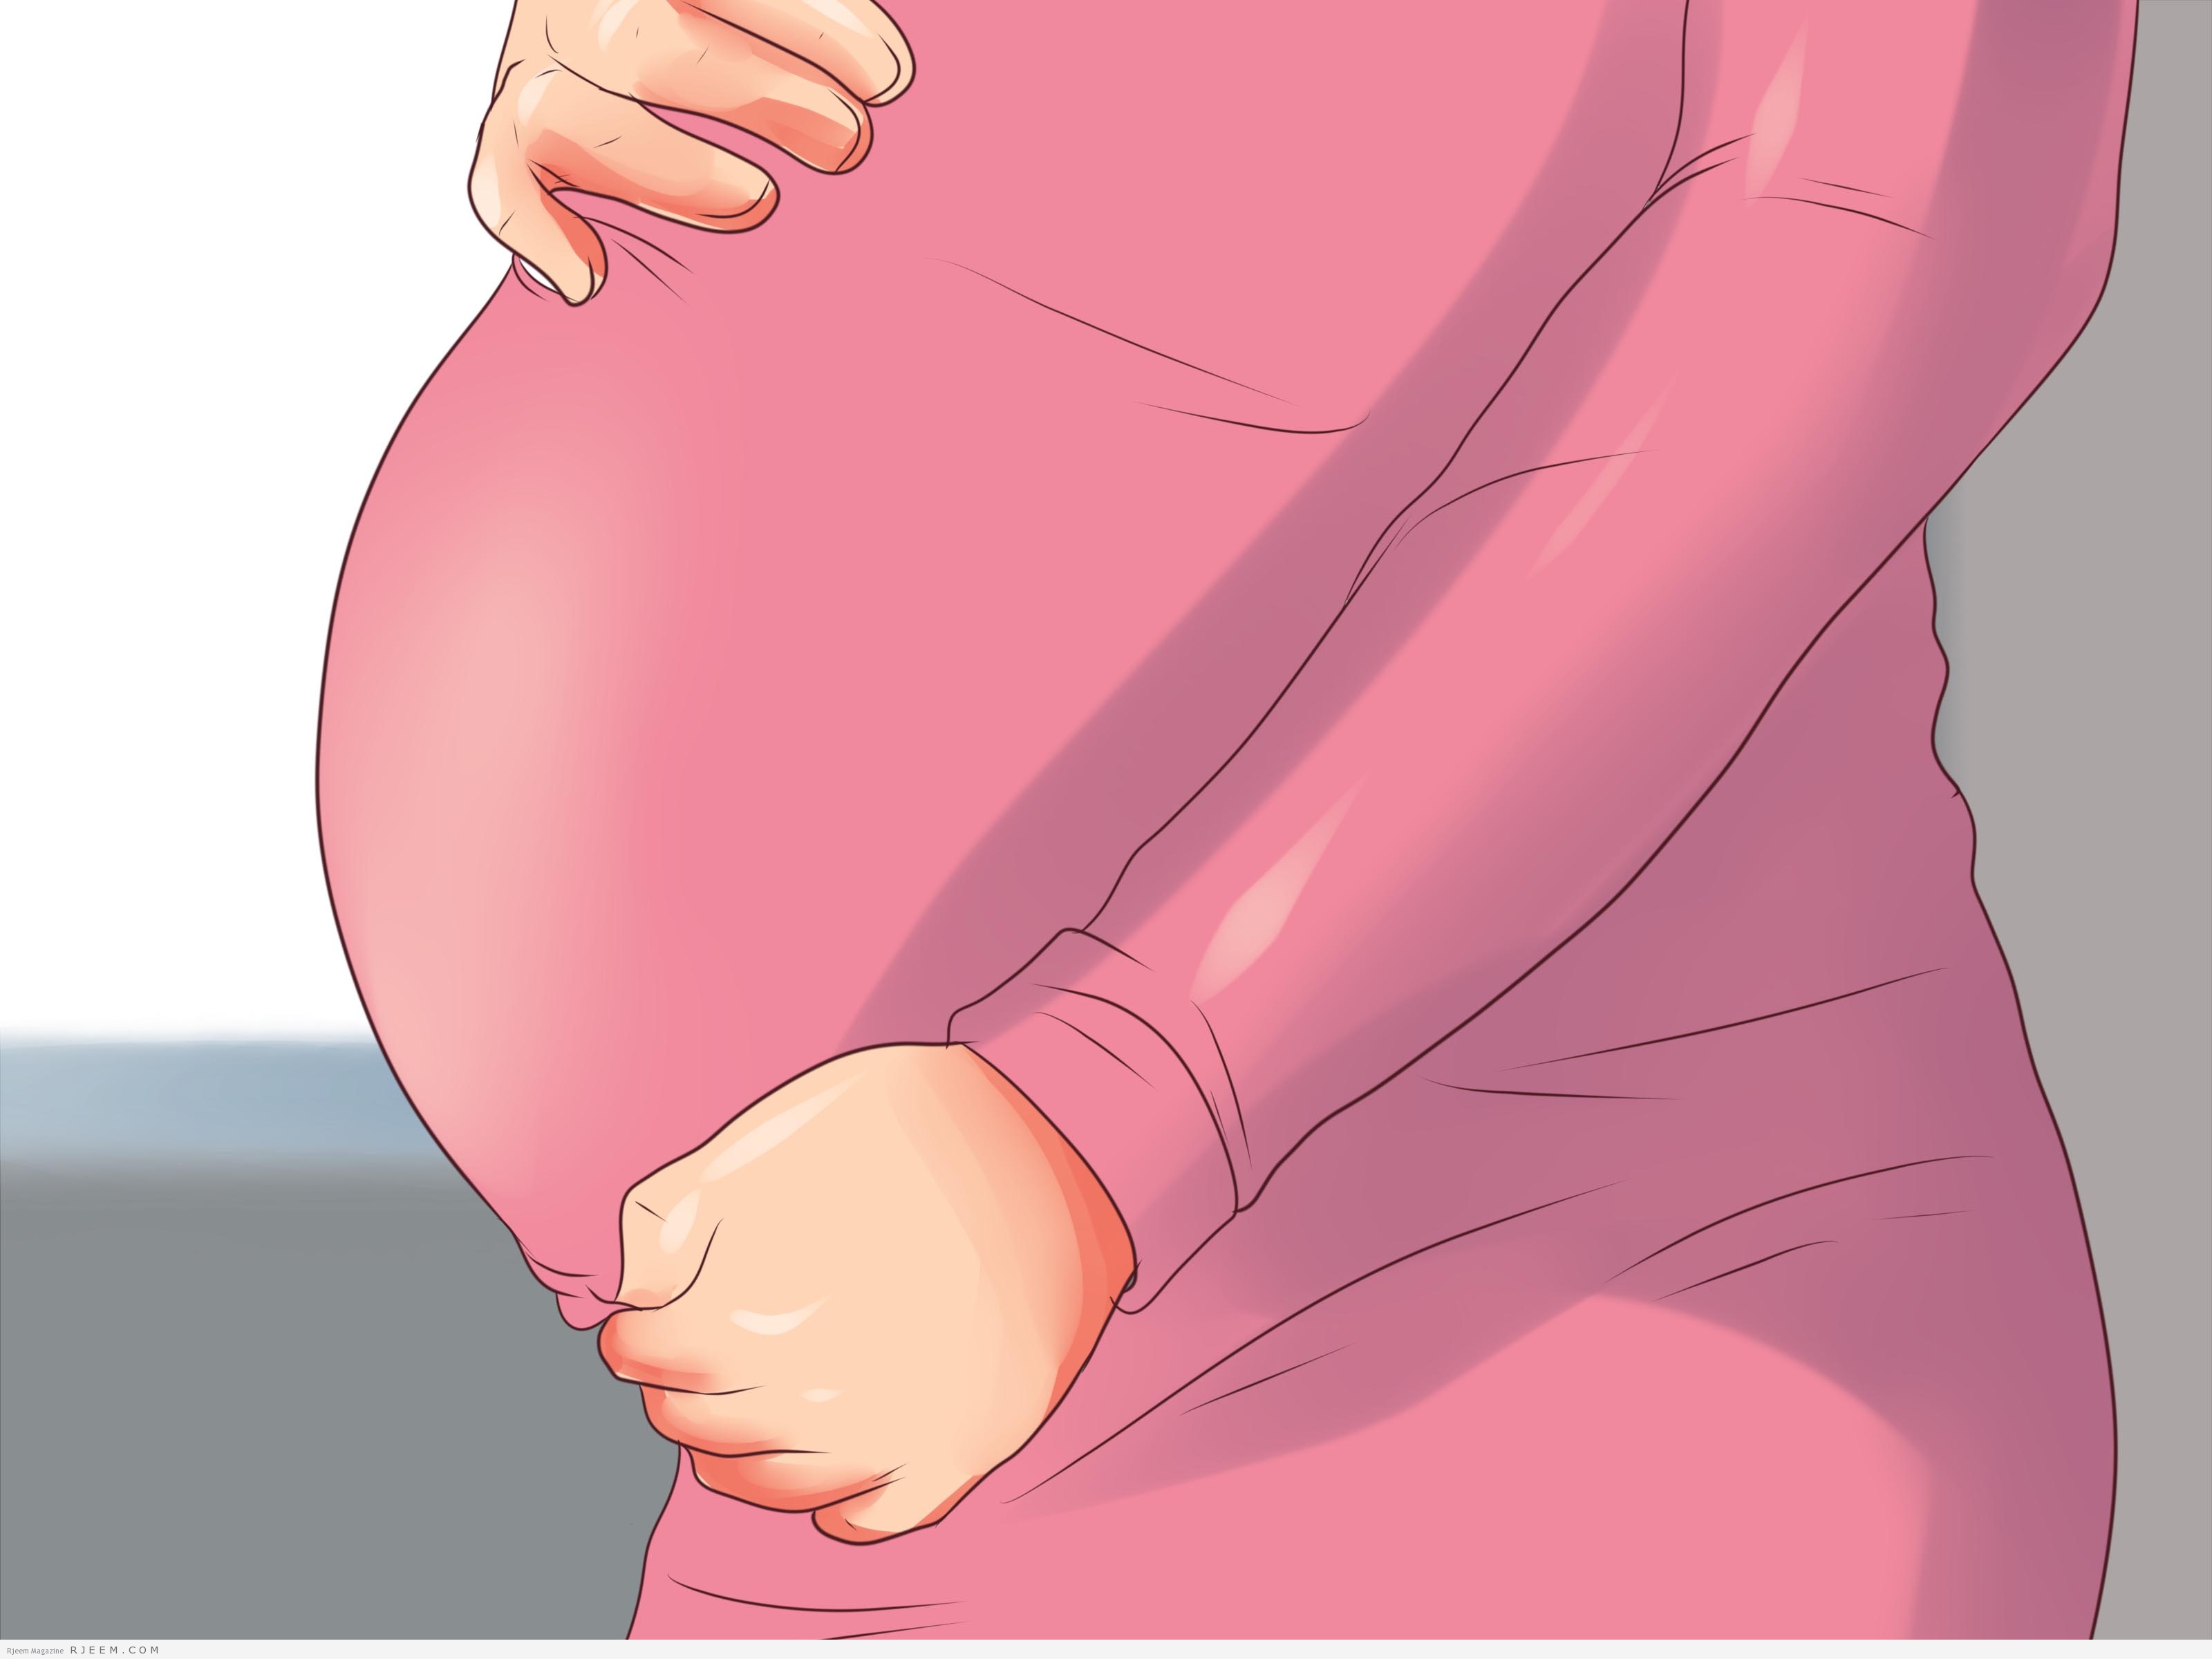 فوائد واضرار الكبدة للحامل